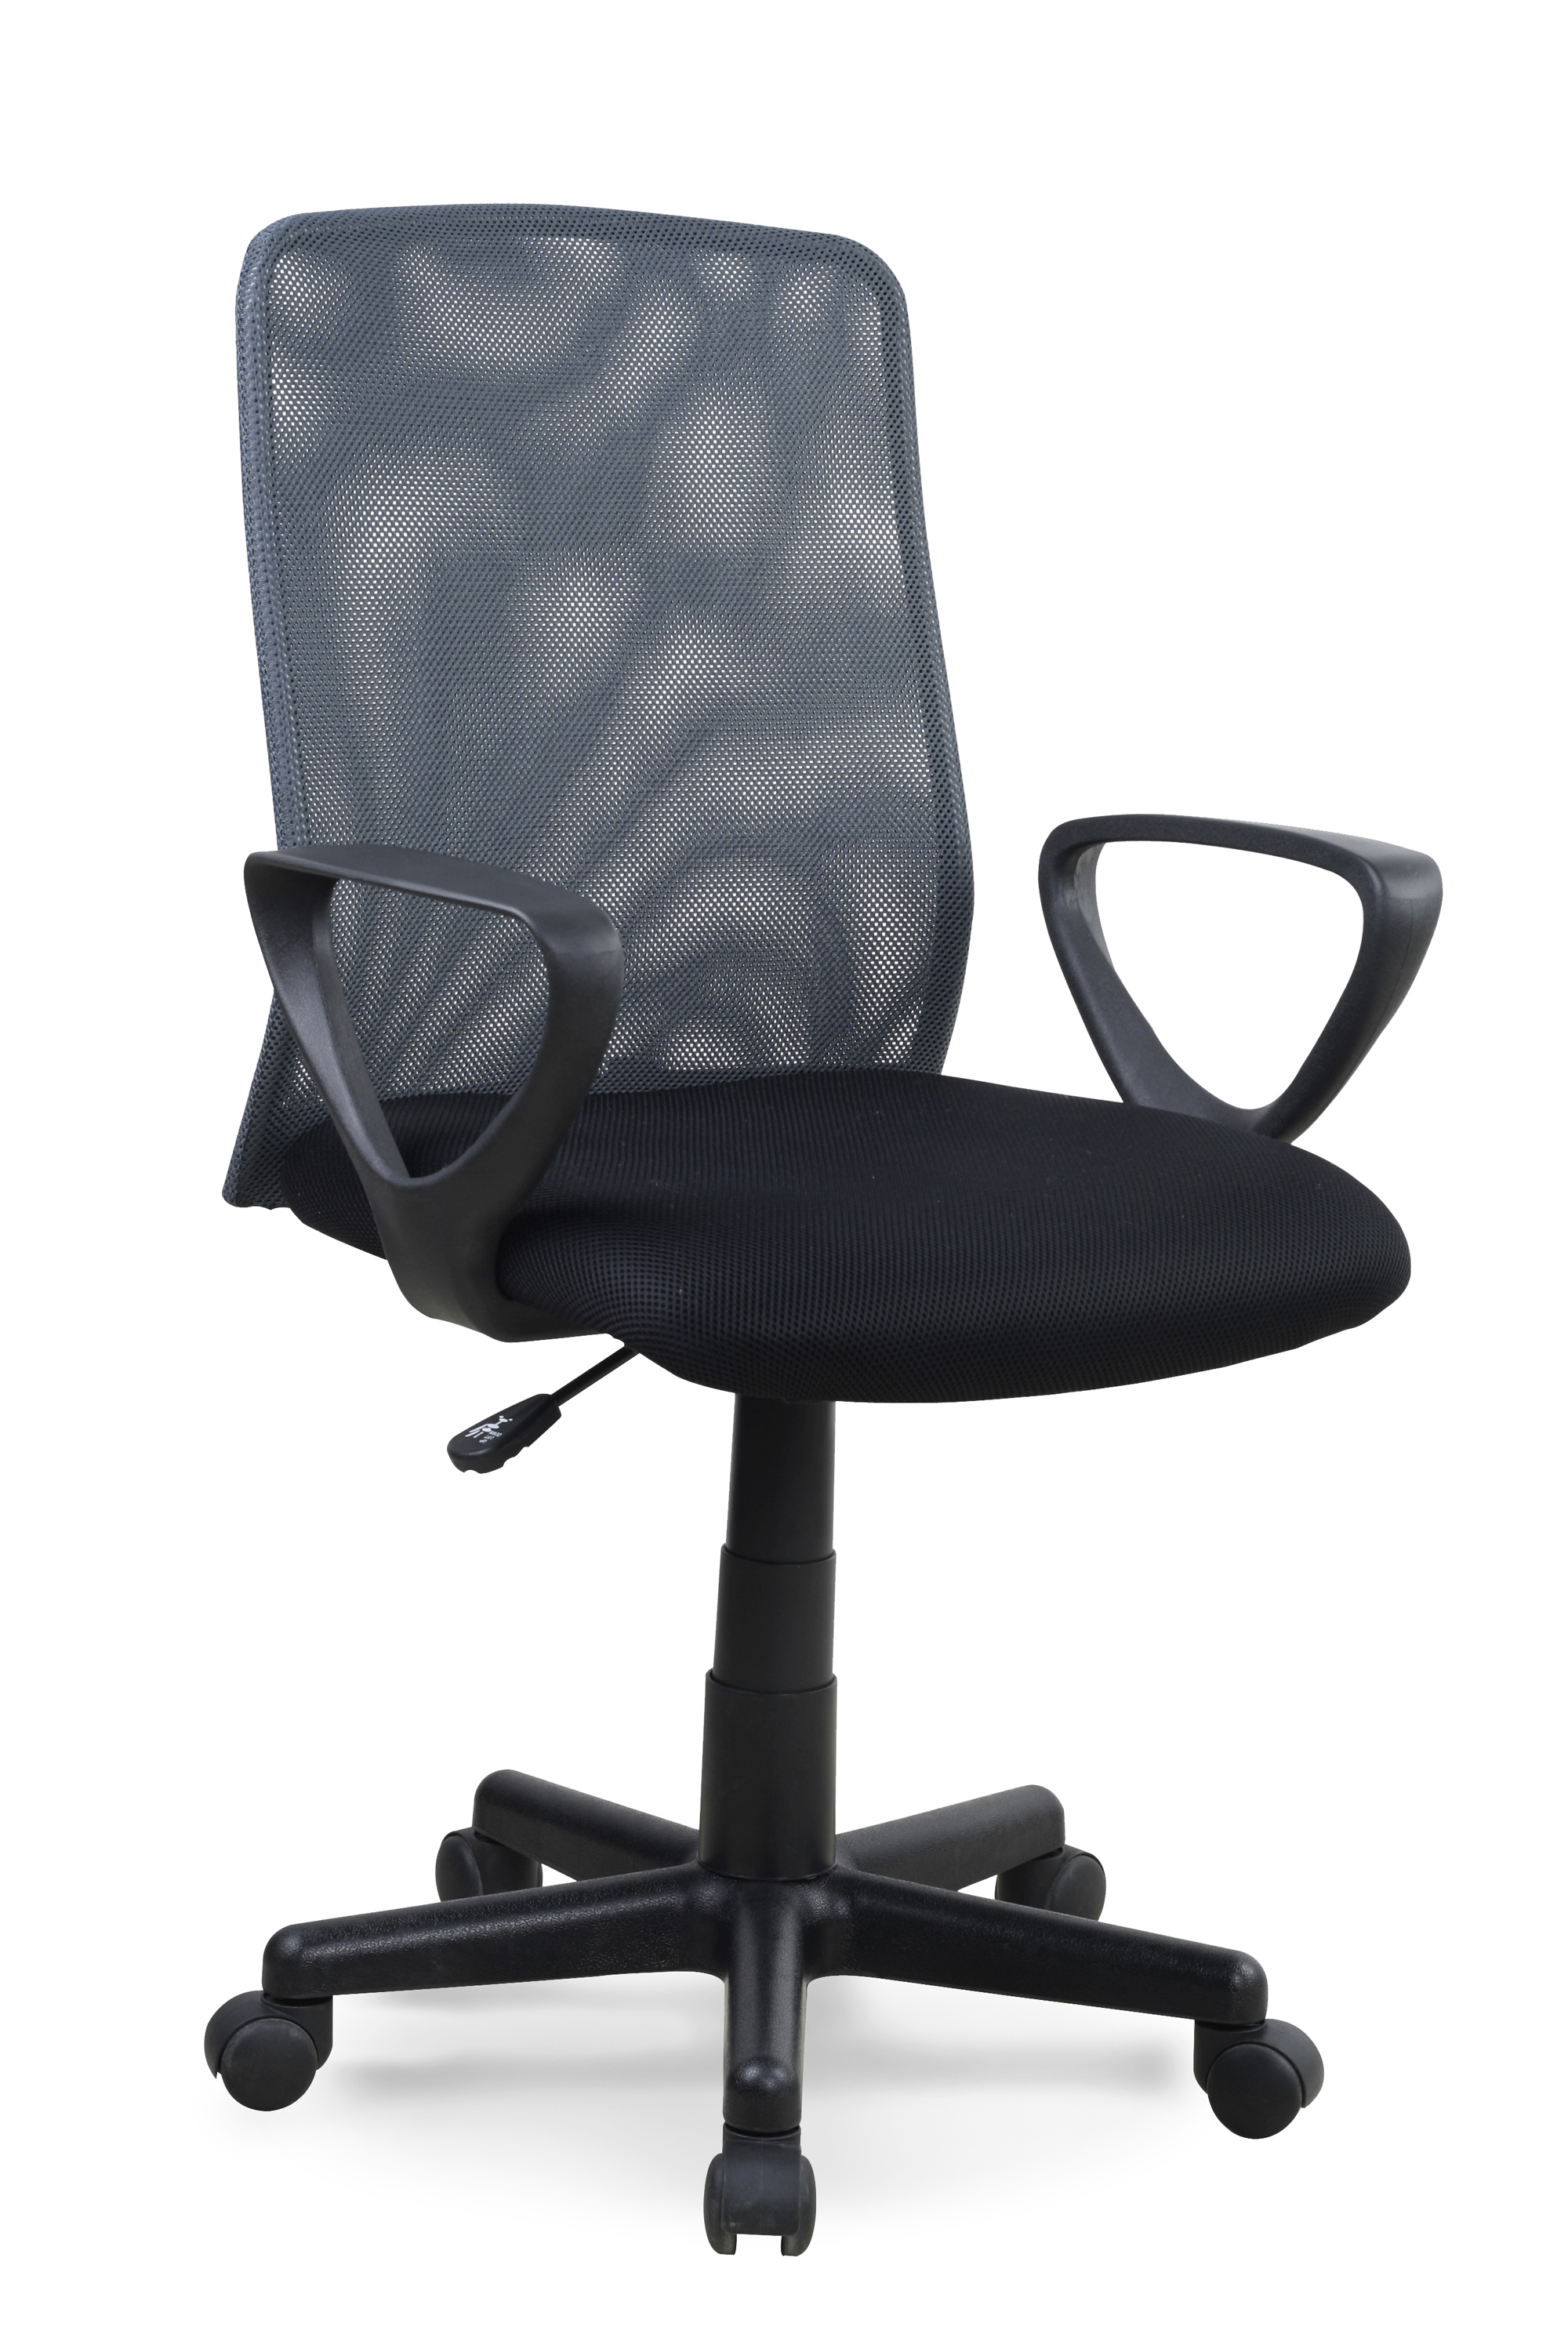 ALEX irodai szék - fekete-szürke alex Kancelářské křeslo černé-šedé